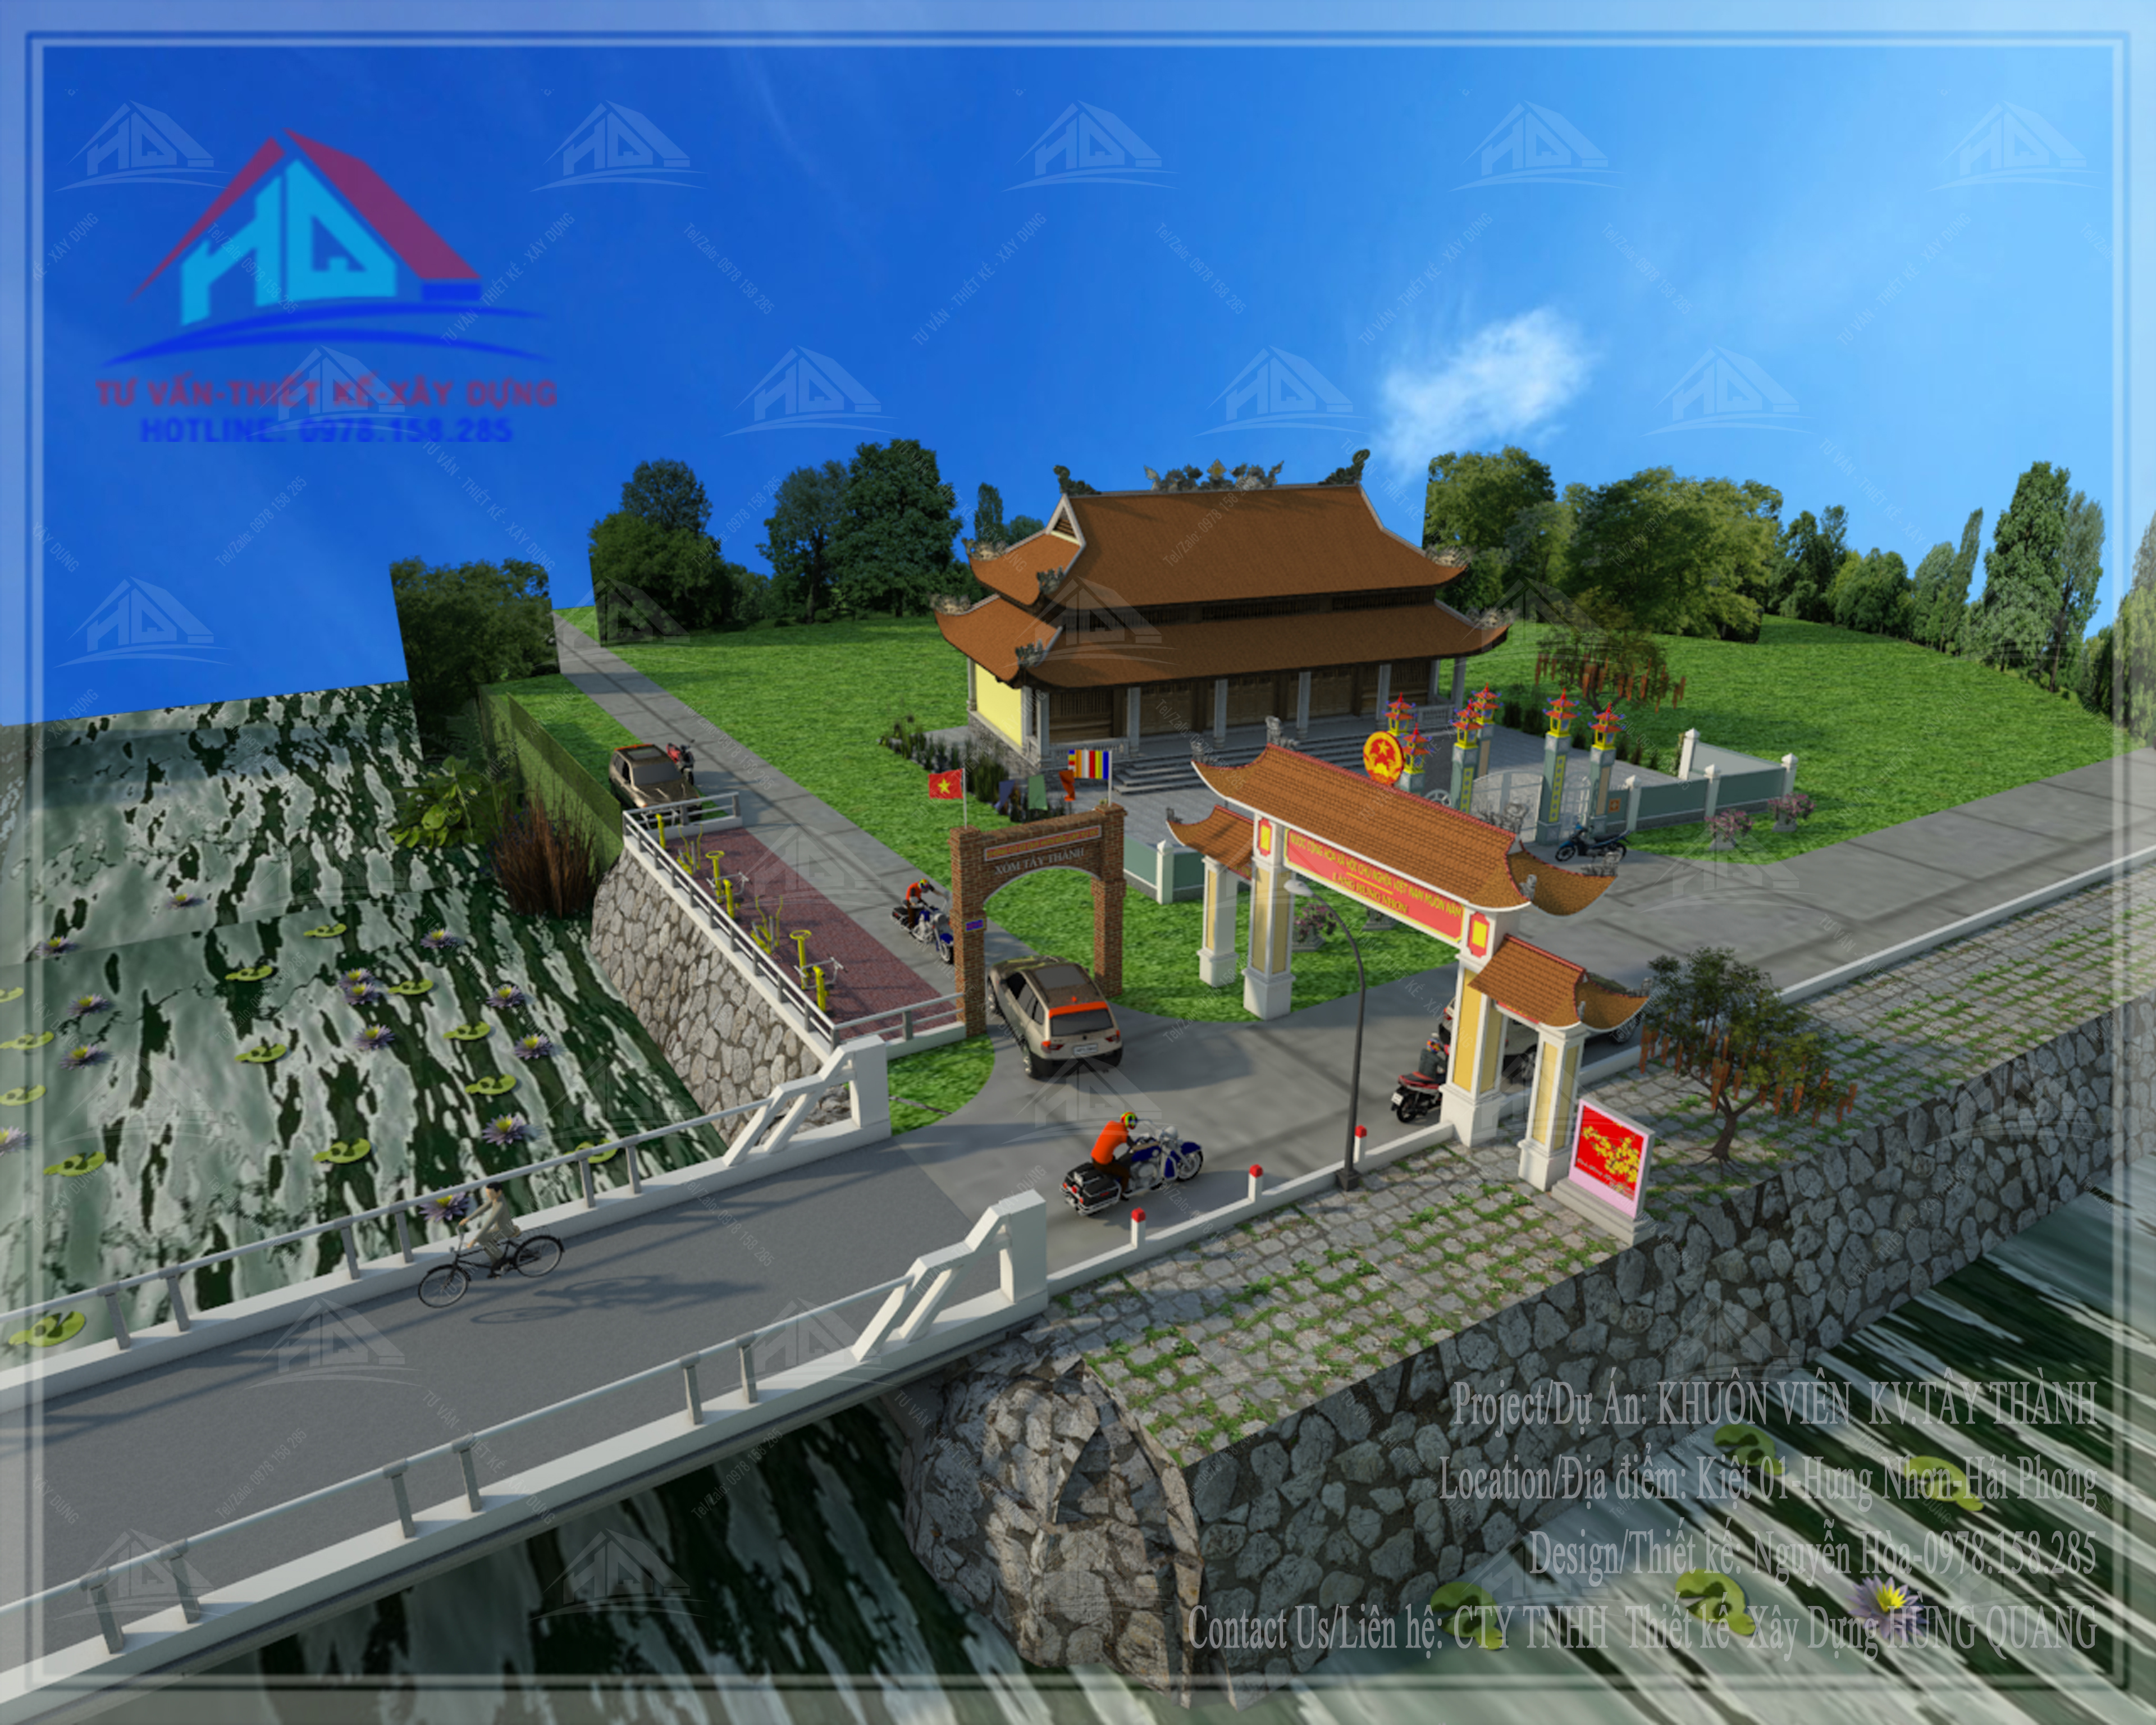 thiết kế công viên đẹp thiết kế chùa đẹp tai quang tri (3)